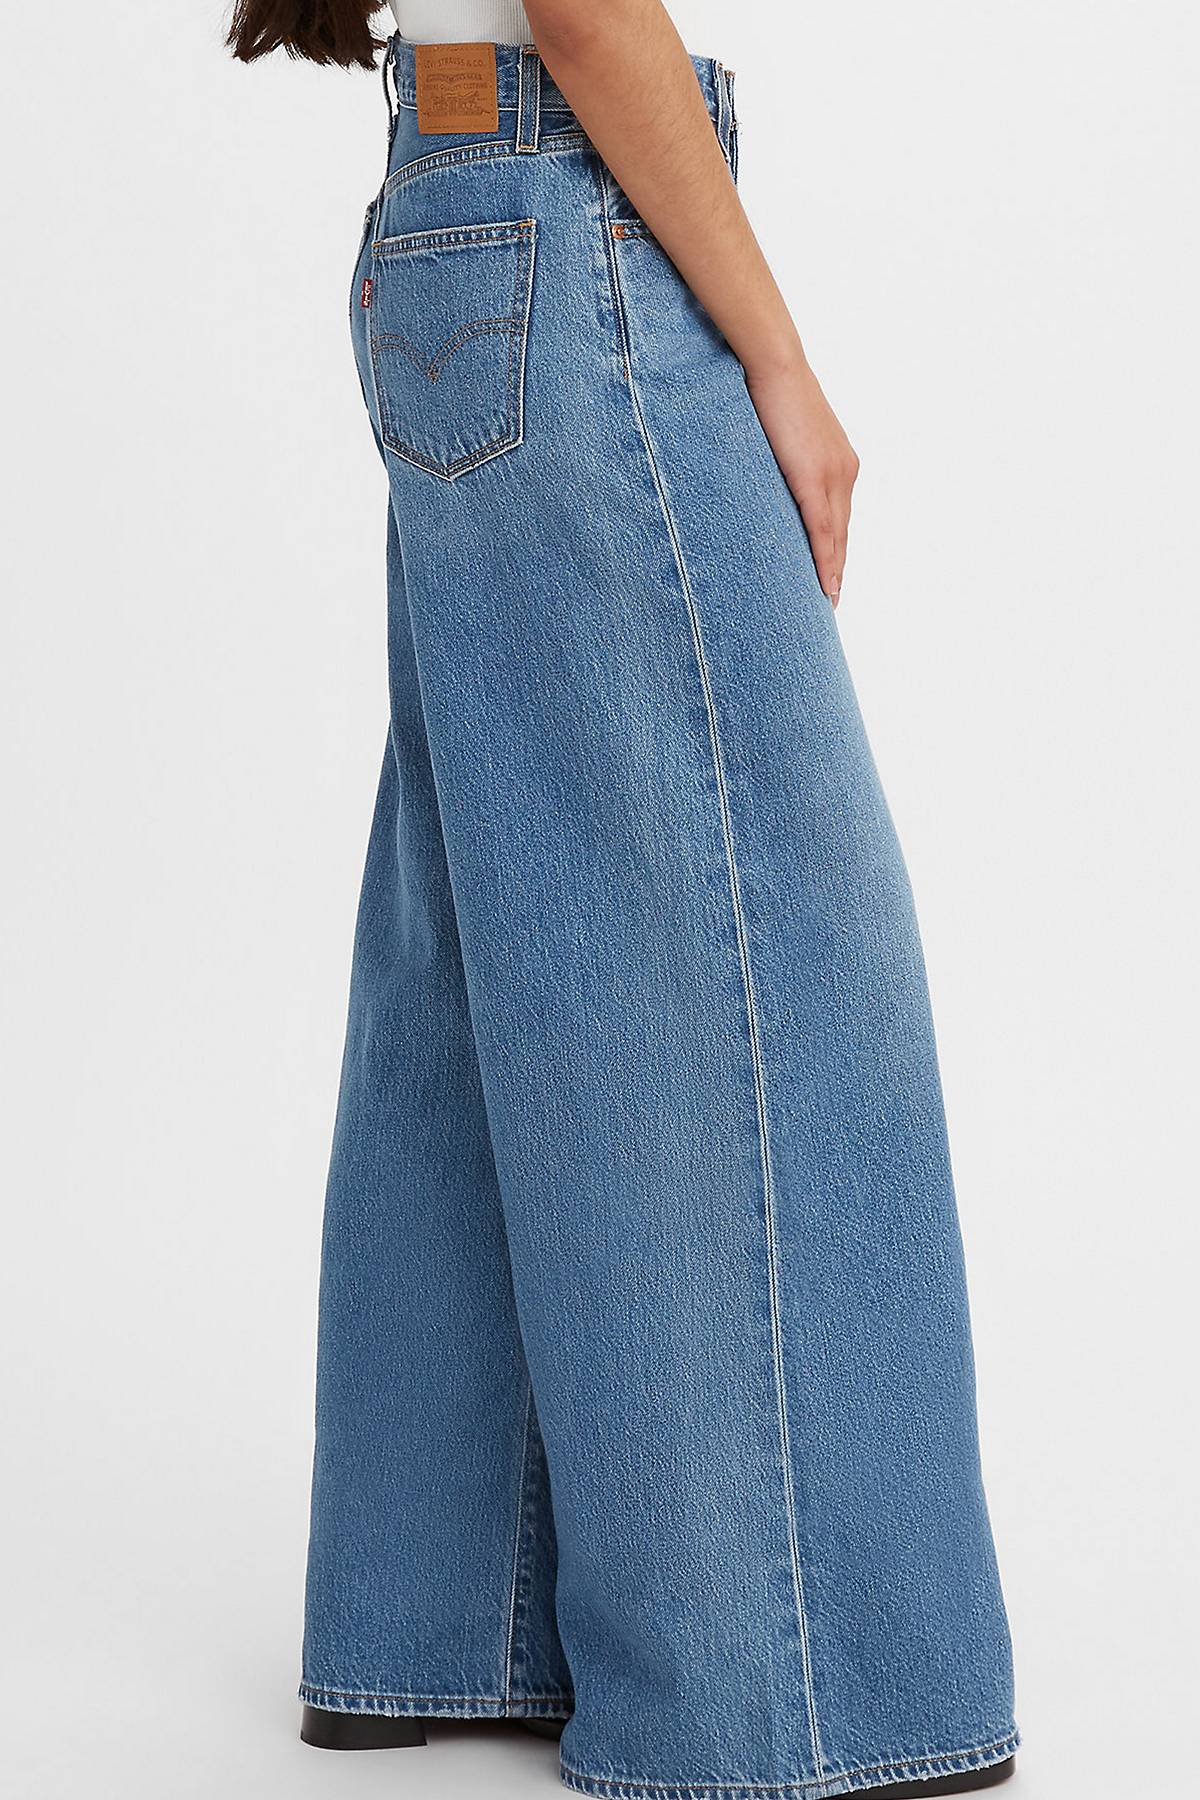 Model wearing XL Flood Jeans.